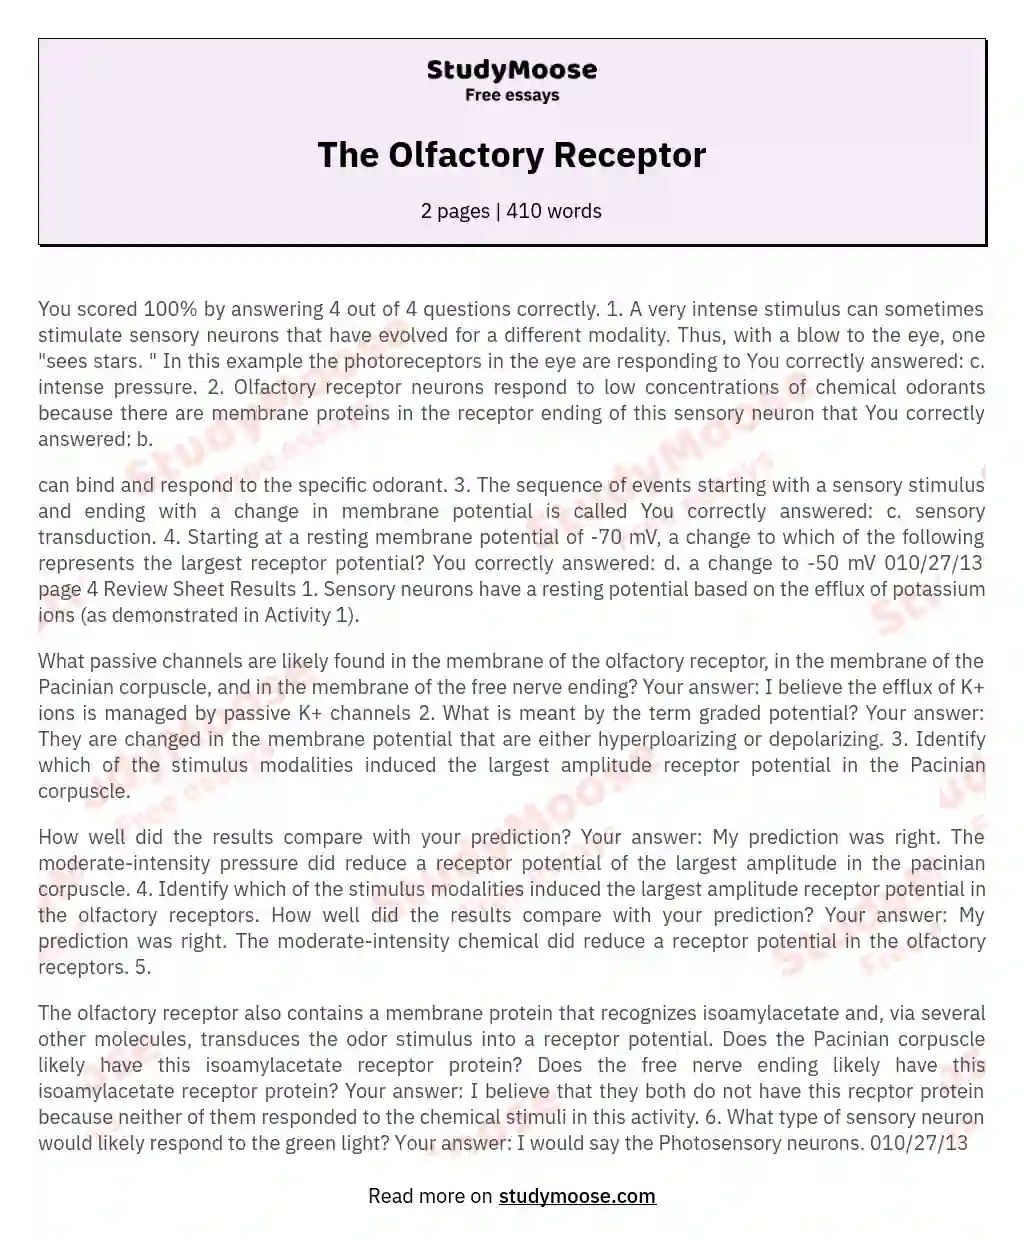 The Olfactory Receptor essay